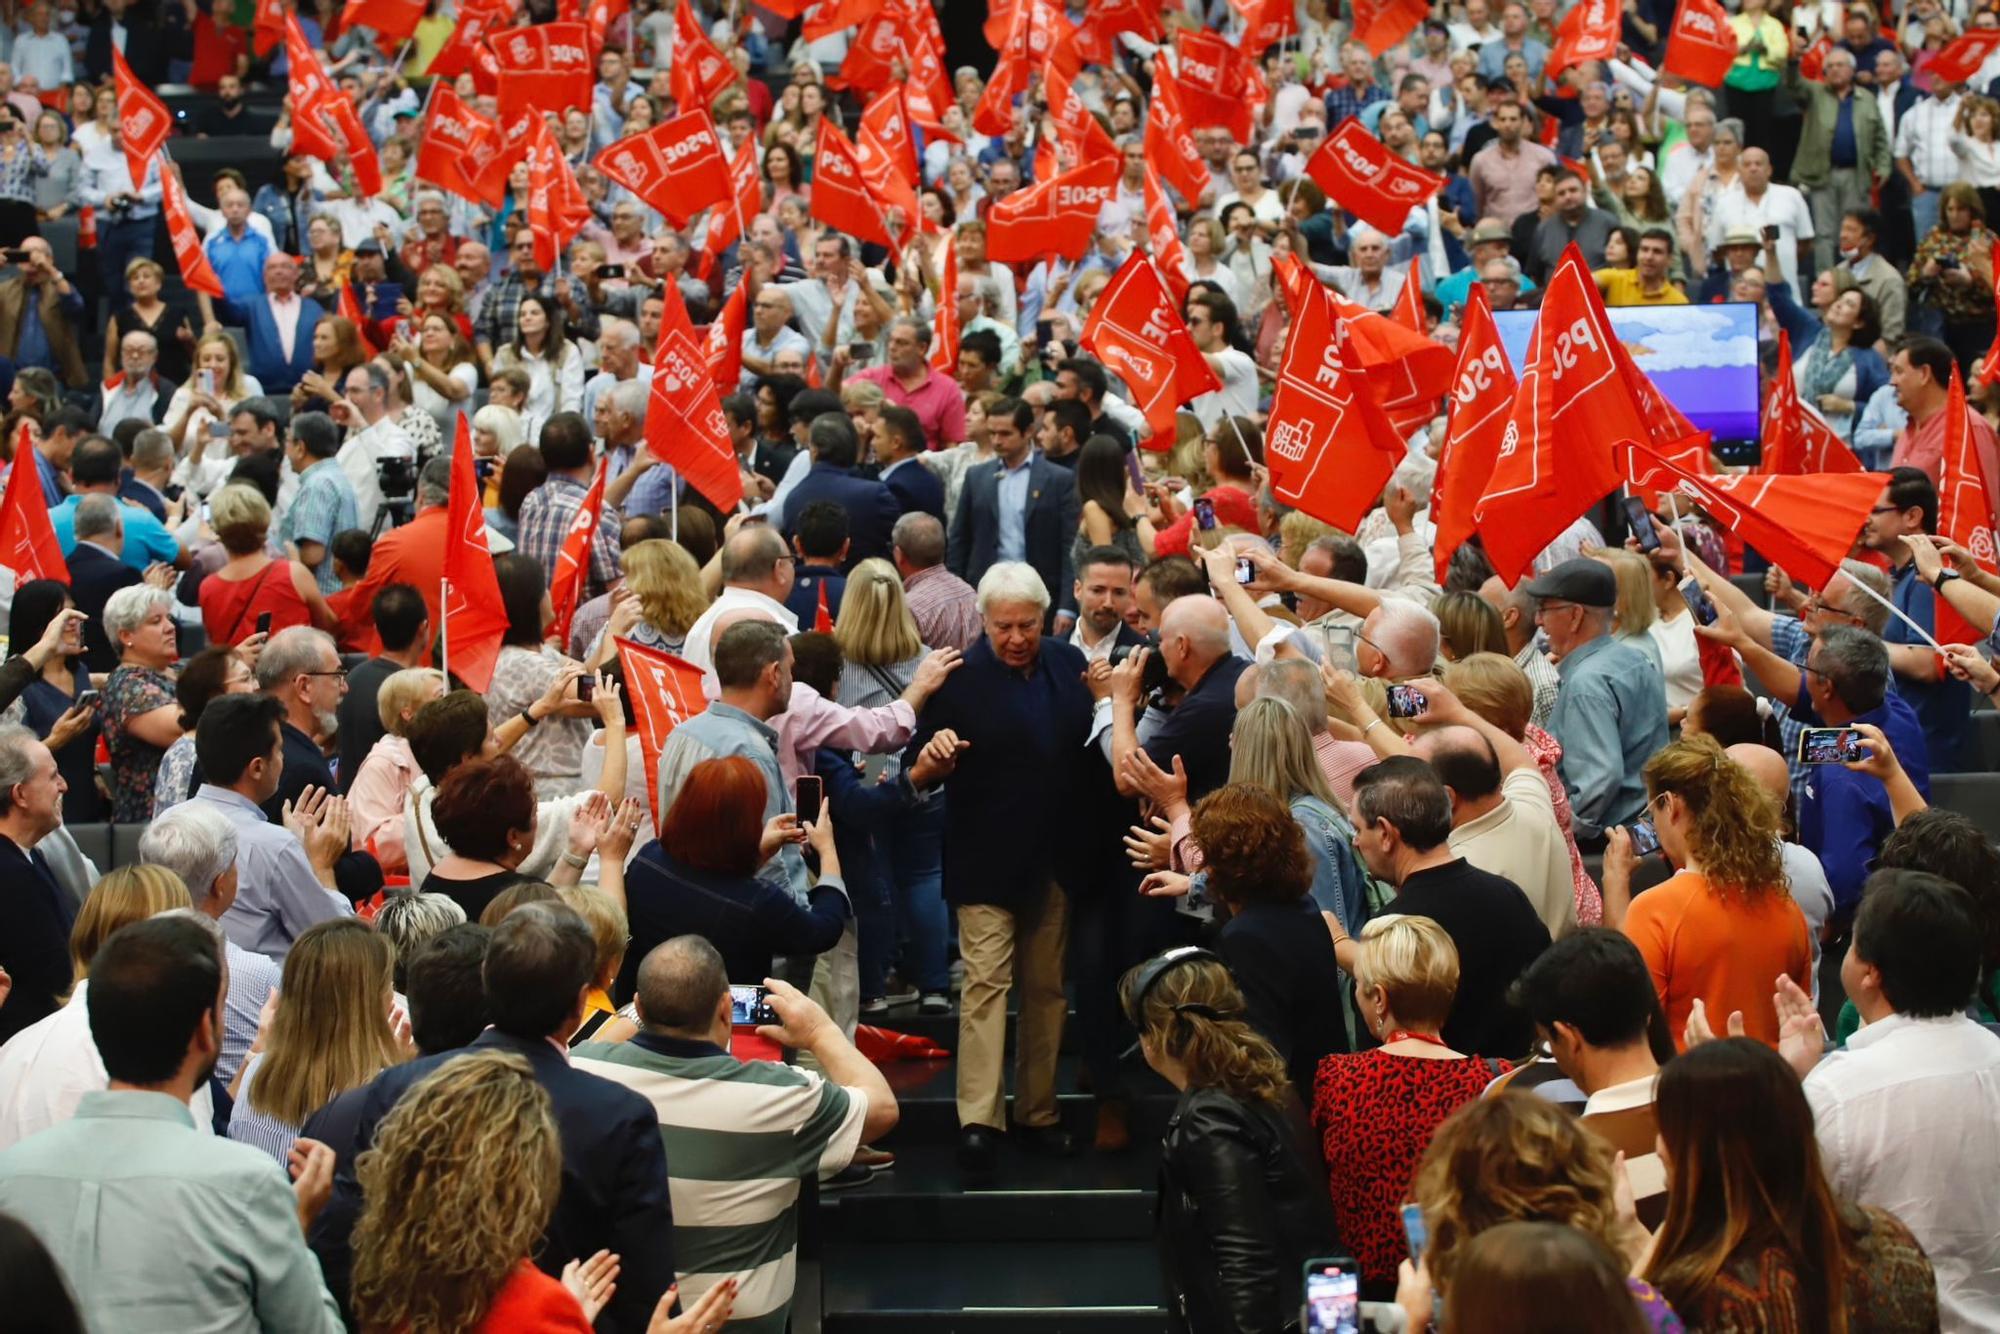 Celebración del 40 aniversario de la primera victoria del PSOE en España